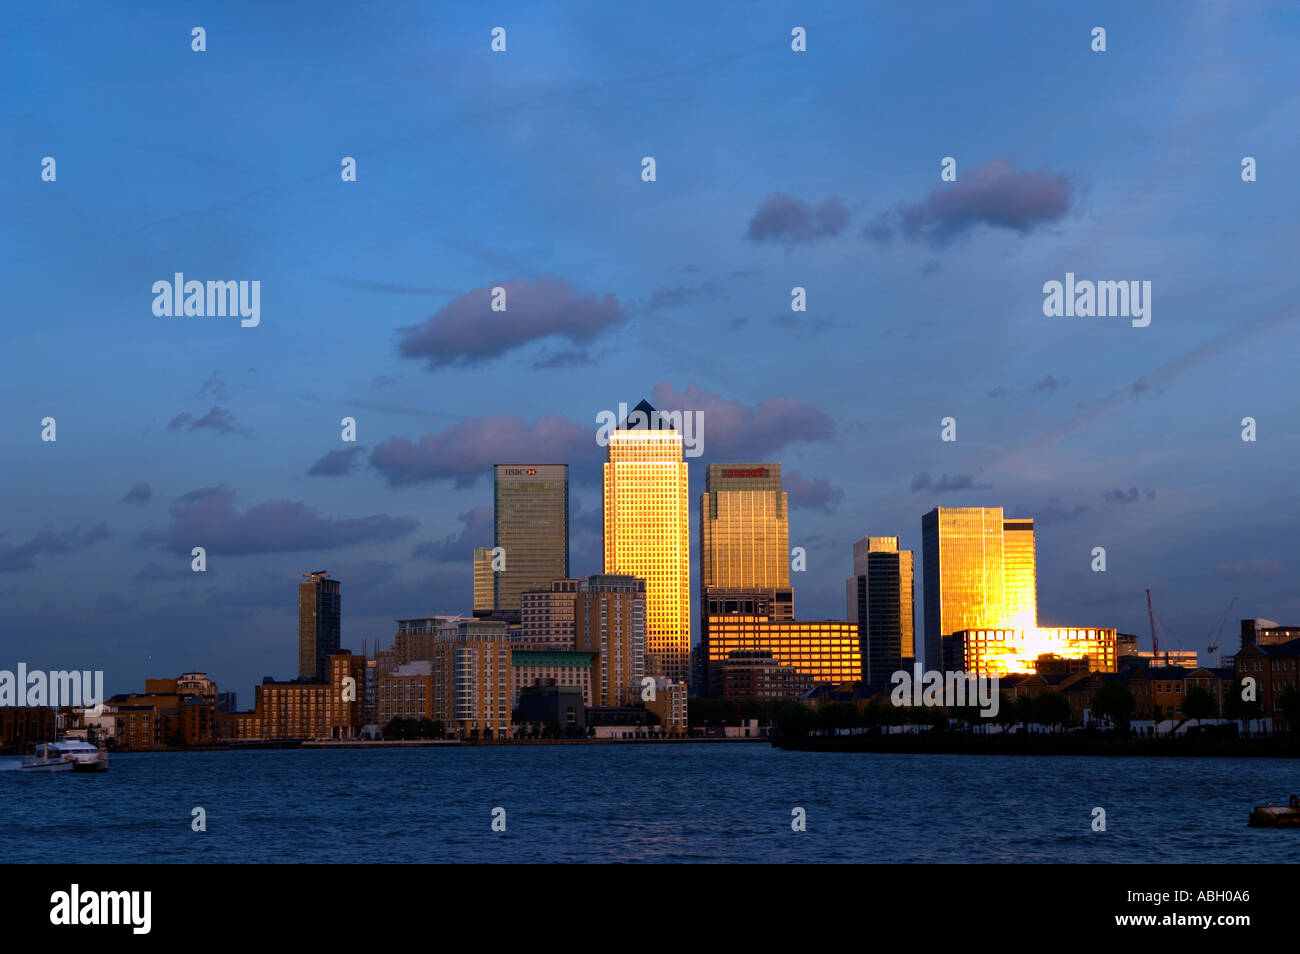 Canary Wharf Docklands Londres paysage urbain horizon coucher de soleil crépuscule profil bleu ciel tamise angleterre Grande-bretagne Royaume-Uni afficher Banque D'Images